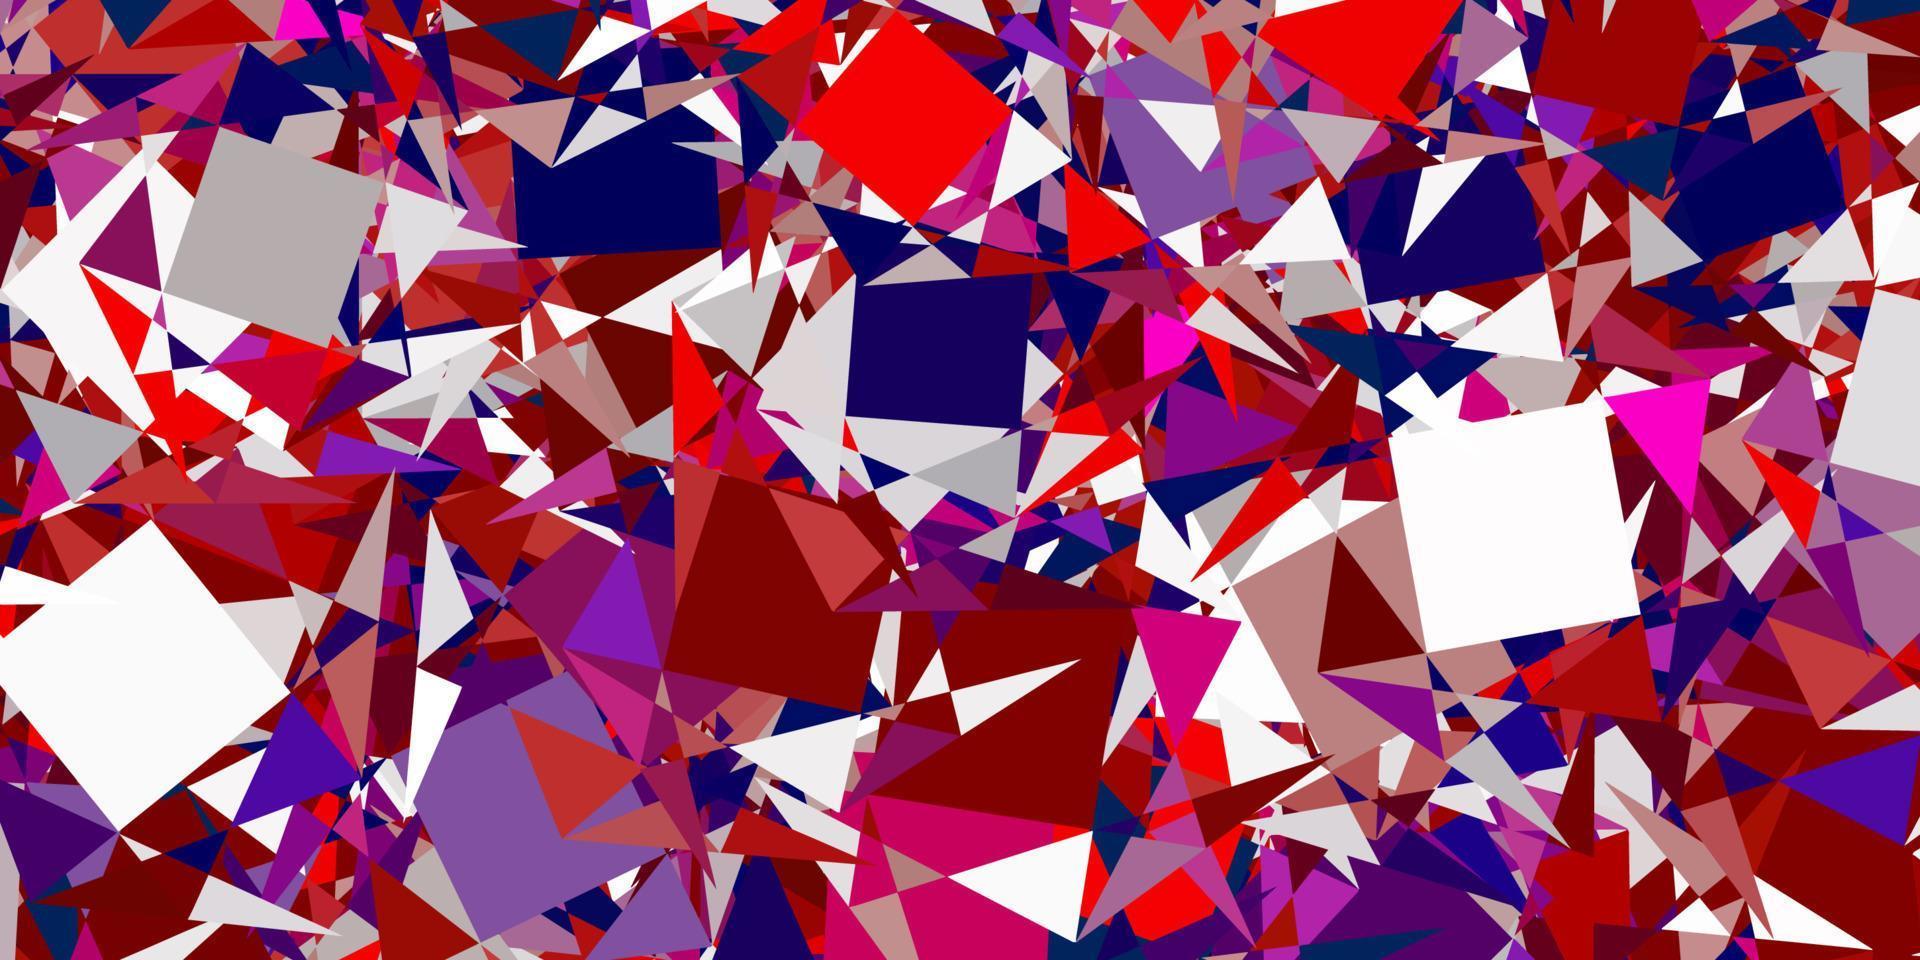 padrão de vetor azul e vermelho claro com formas poligonais.